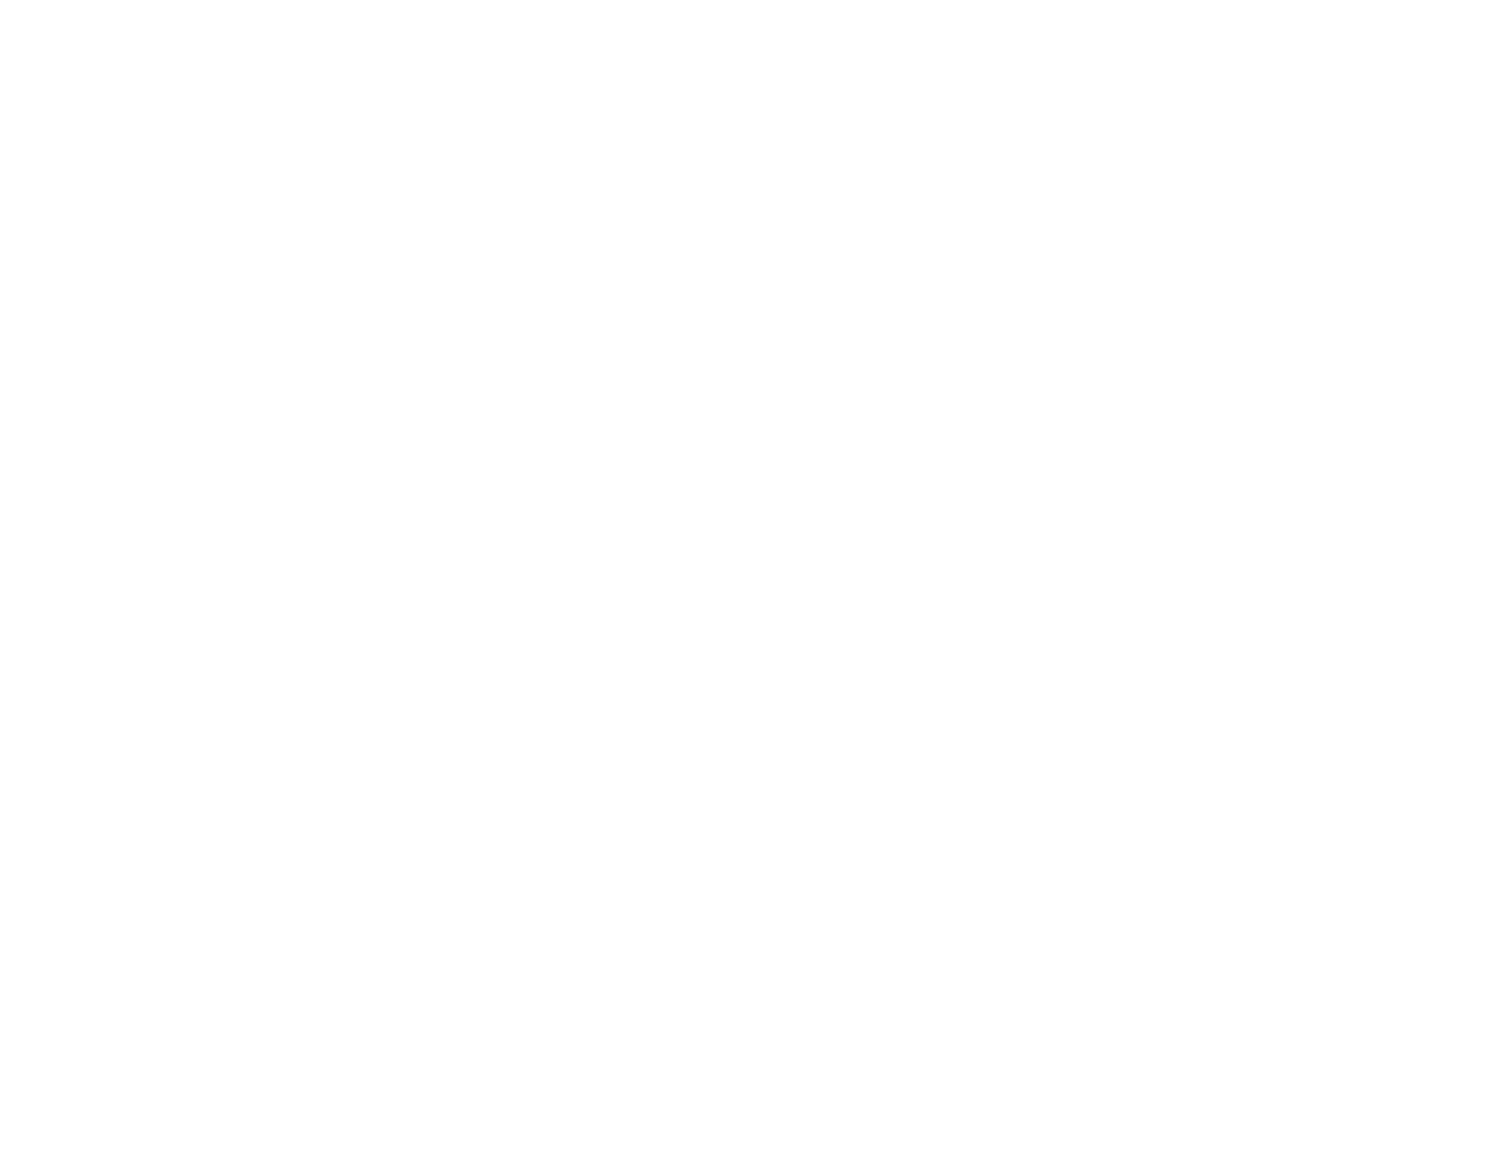 Indiana Whiskey Company